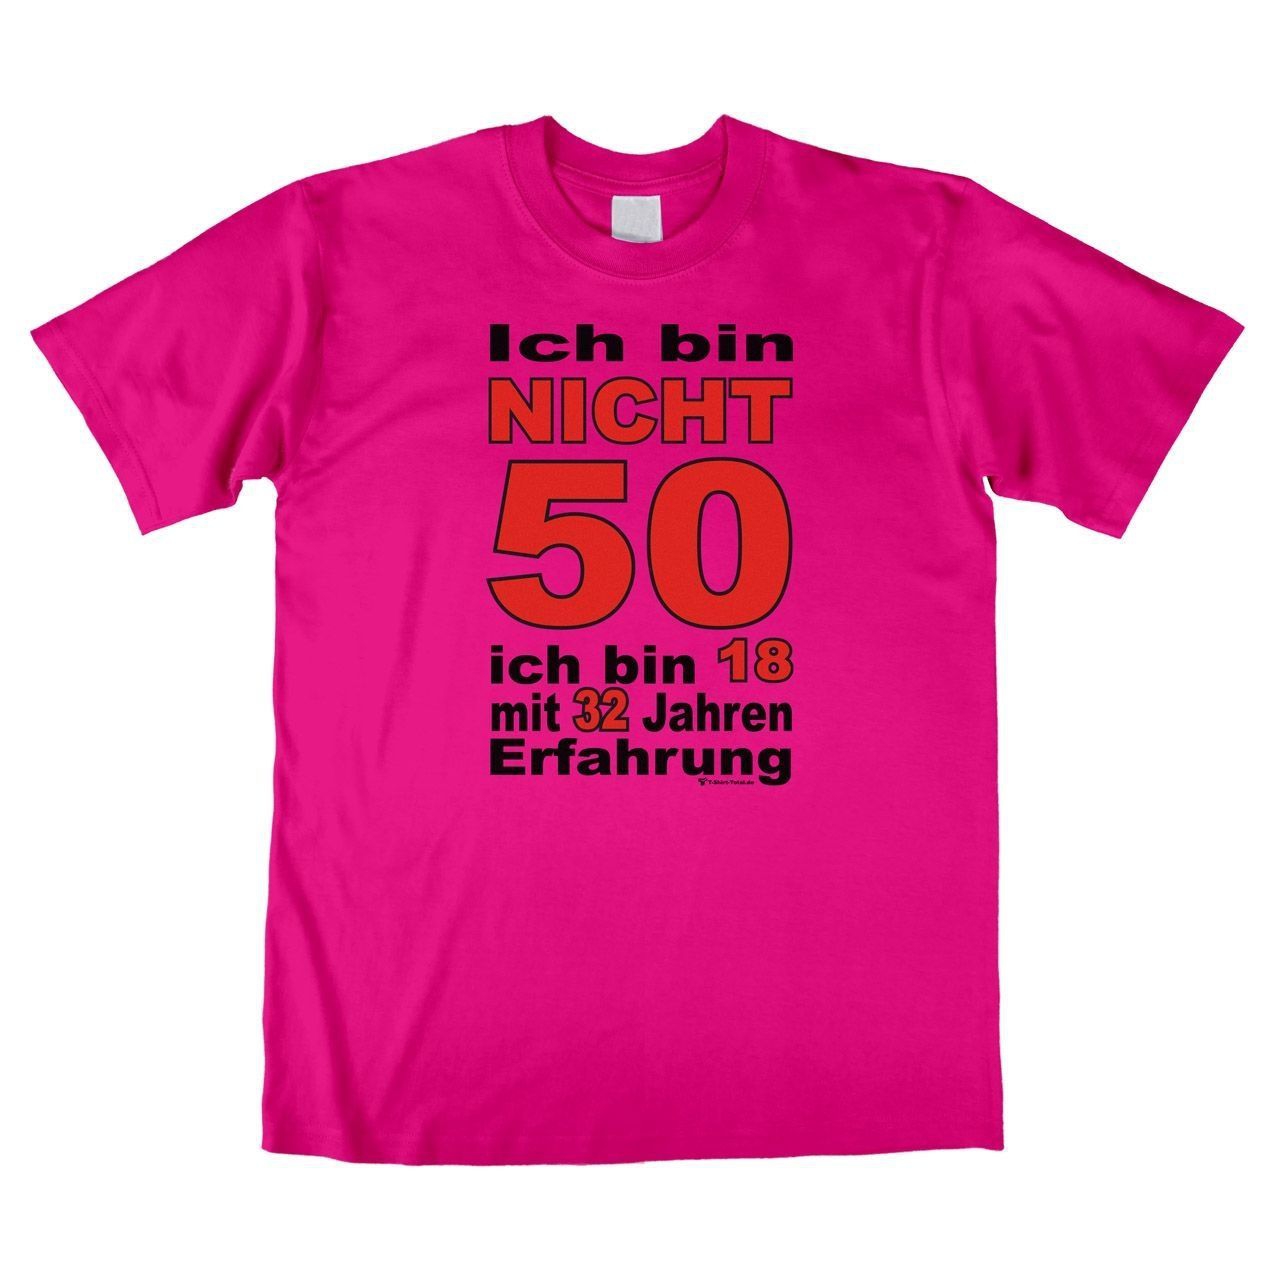 Bin nicht 50 Unisex T-Shirt pink Large